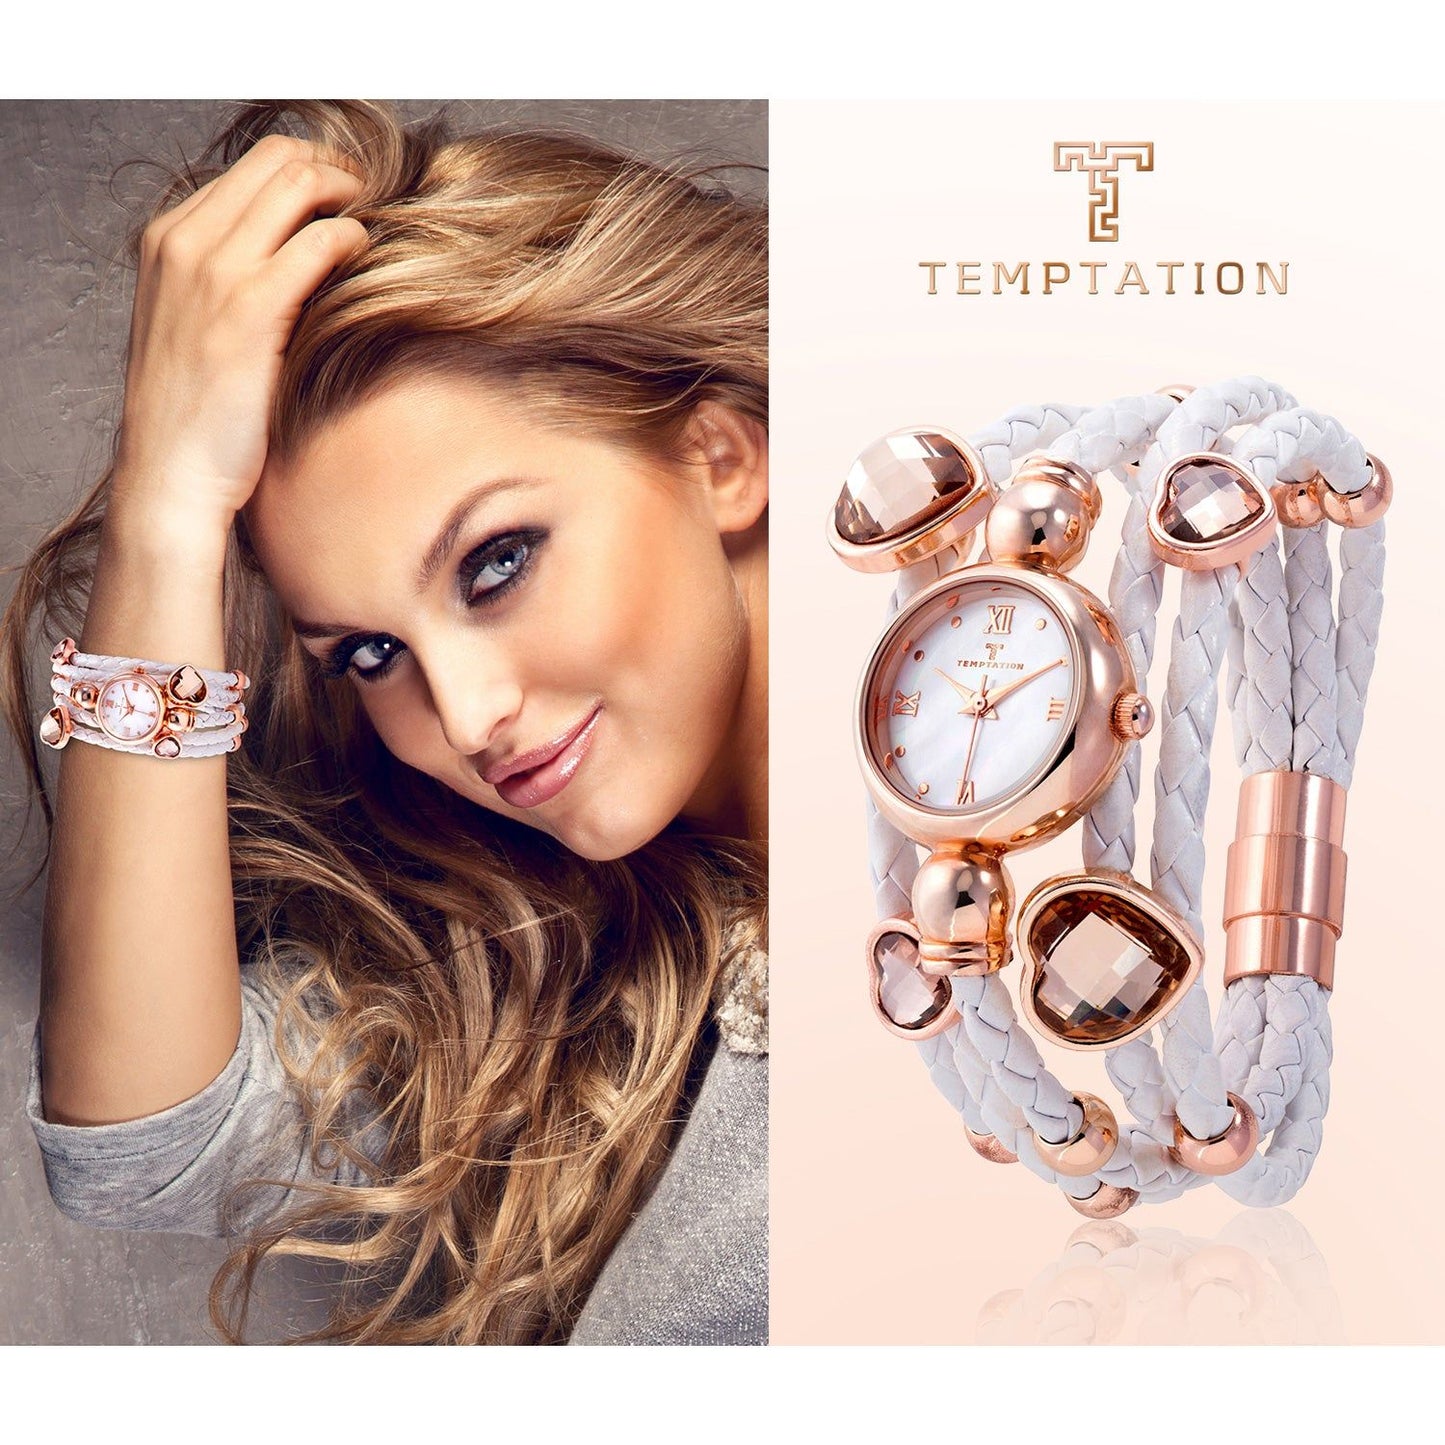 TEMPTATION TEMPTATION MOD. TEA-2015-03 WATCHES temptation-mod-tea-2015-3